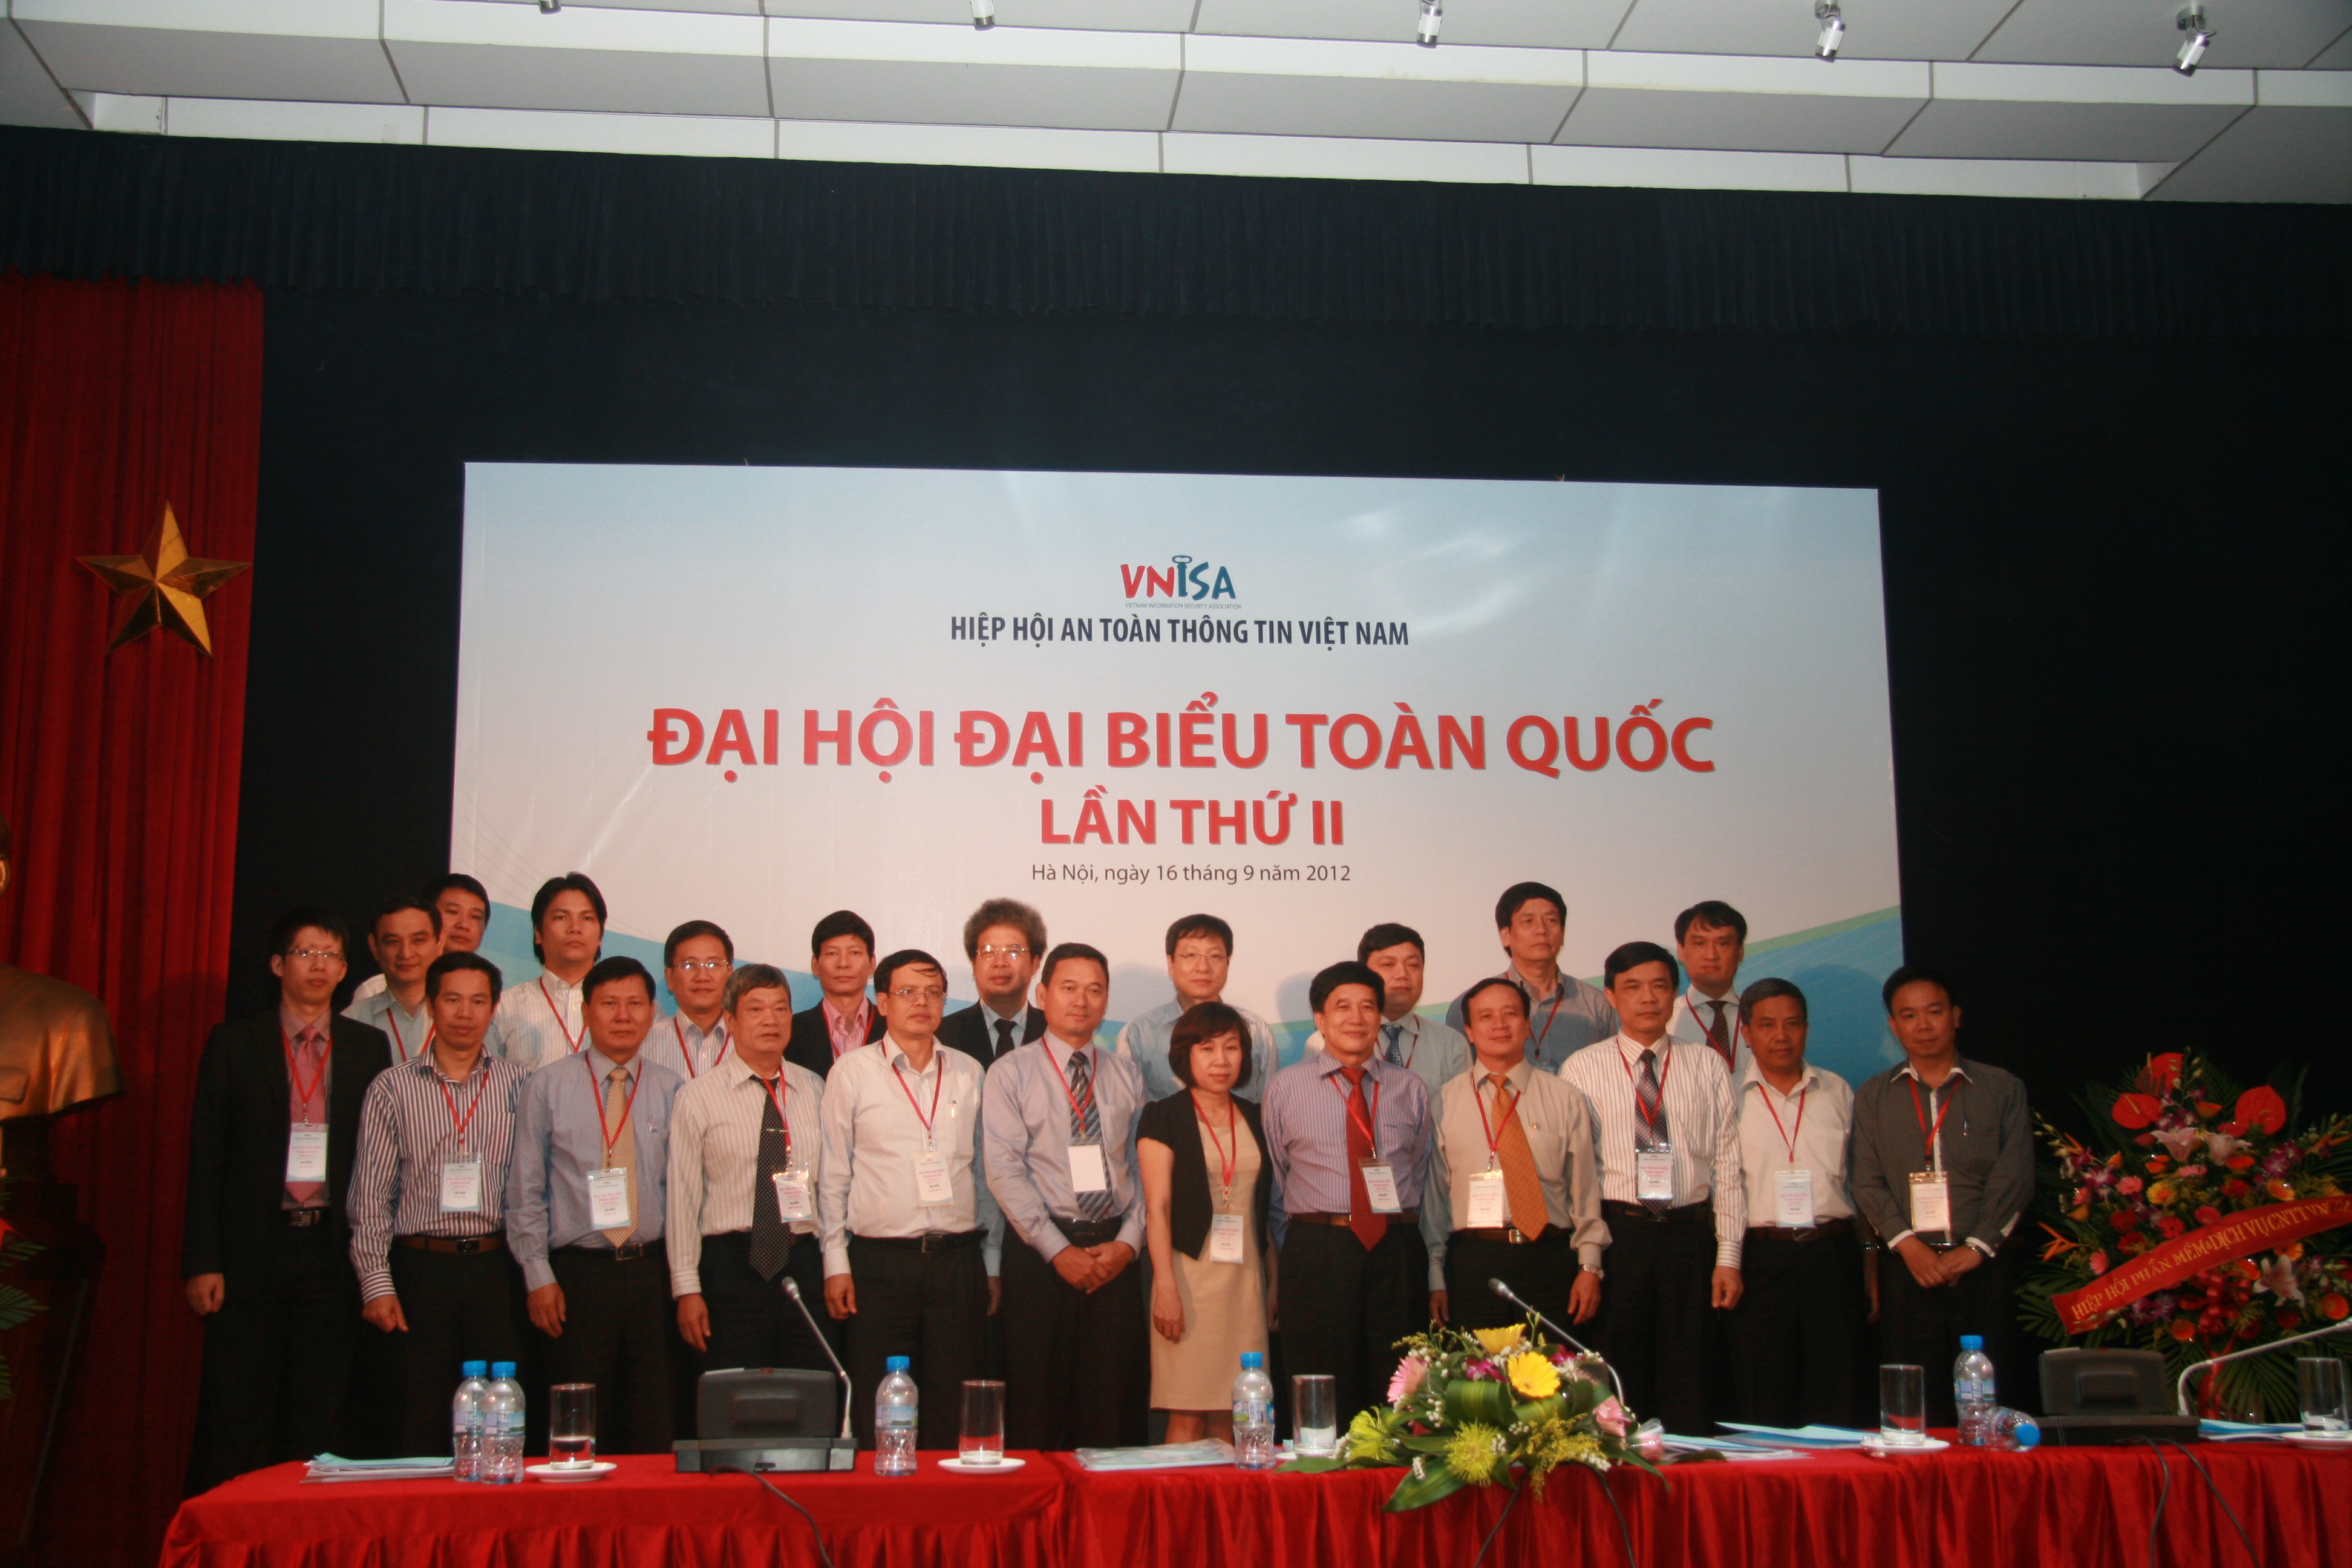 3. Ban chấp hành Hiệp hội An toàn thông tin Việt nam nhiệm kỳ II (2012-2017) ra mắt Đại hội.